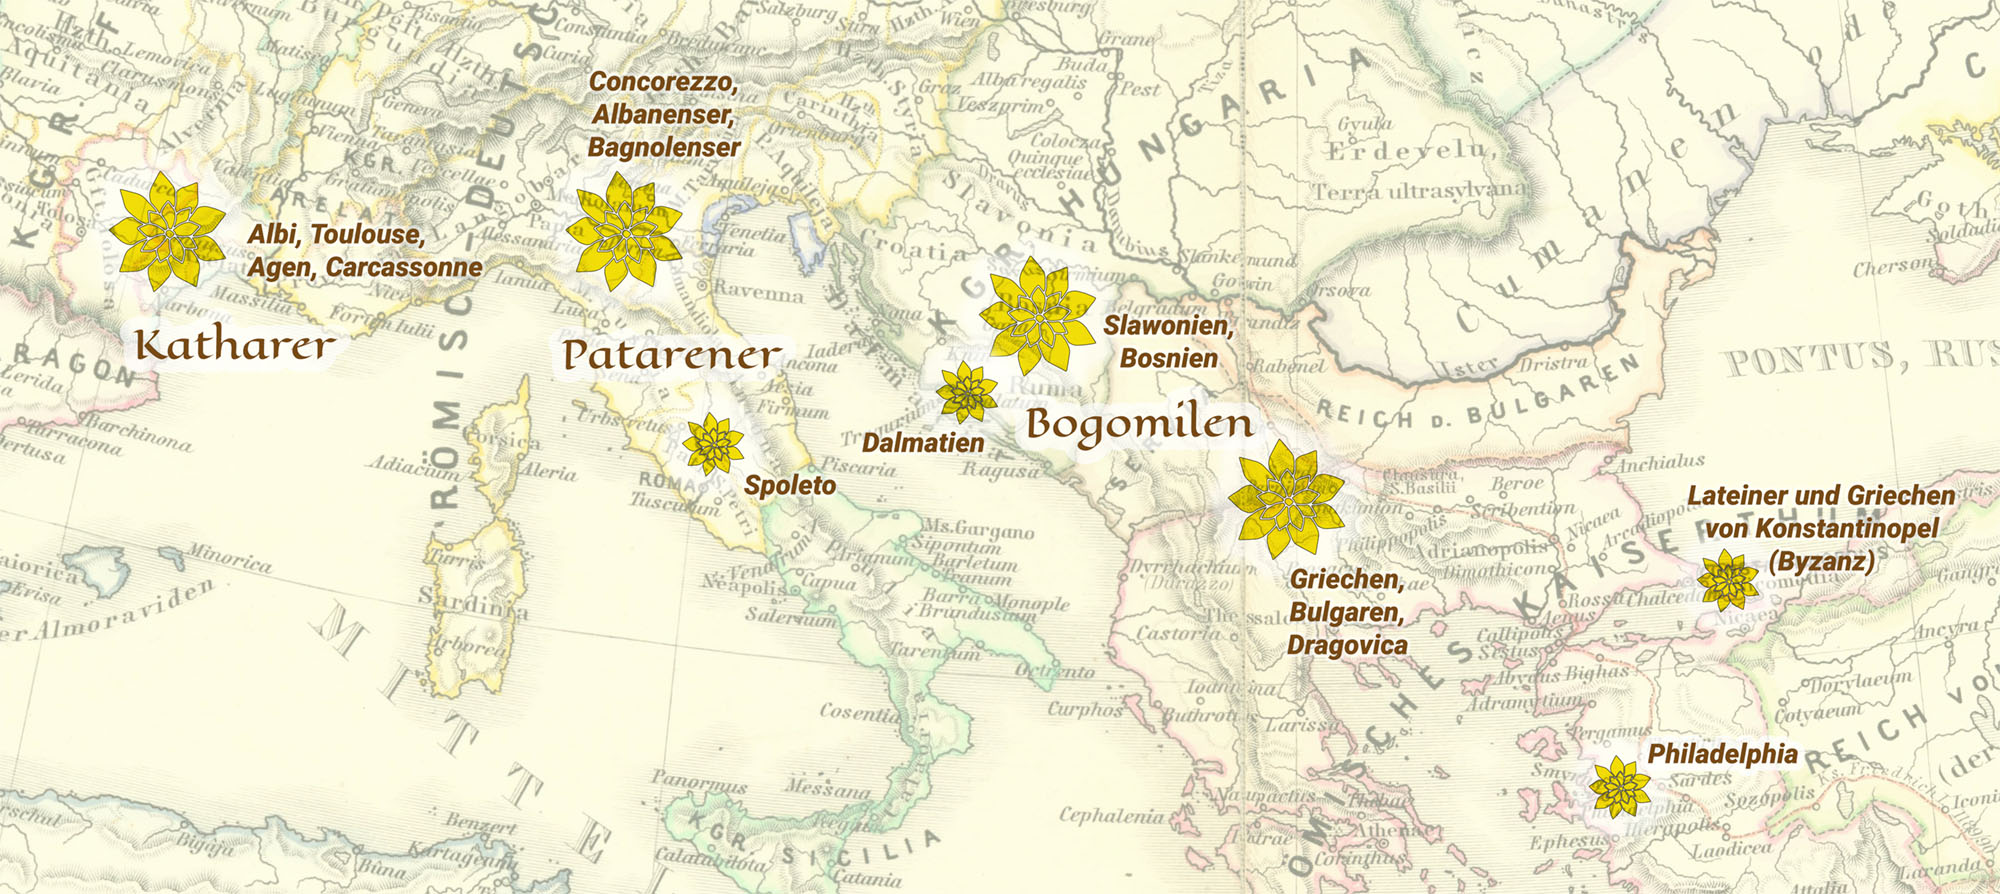 Skupnosti Katarov, Patarenov in Bogumilov v južni Evropi v 13. stoletju